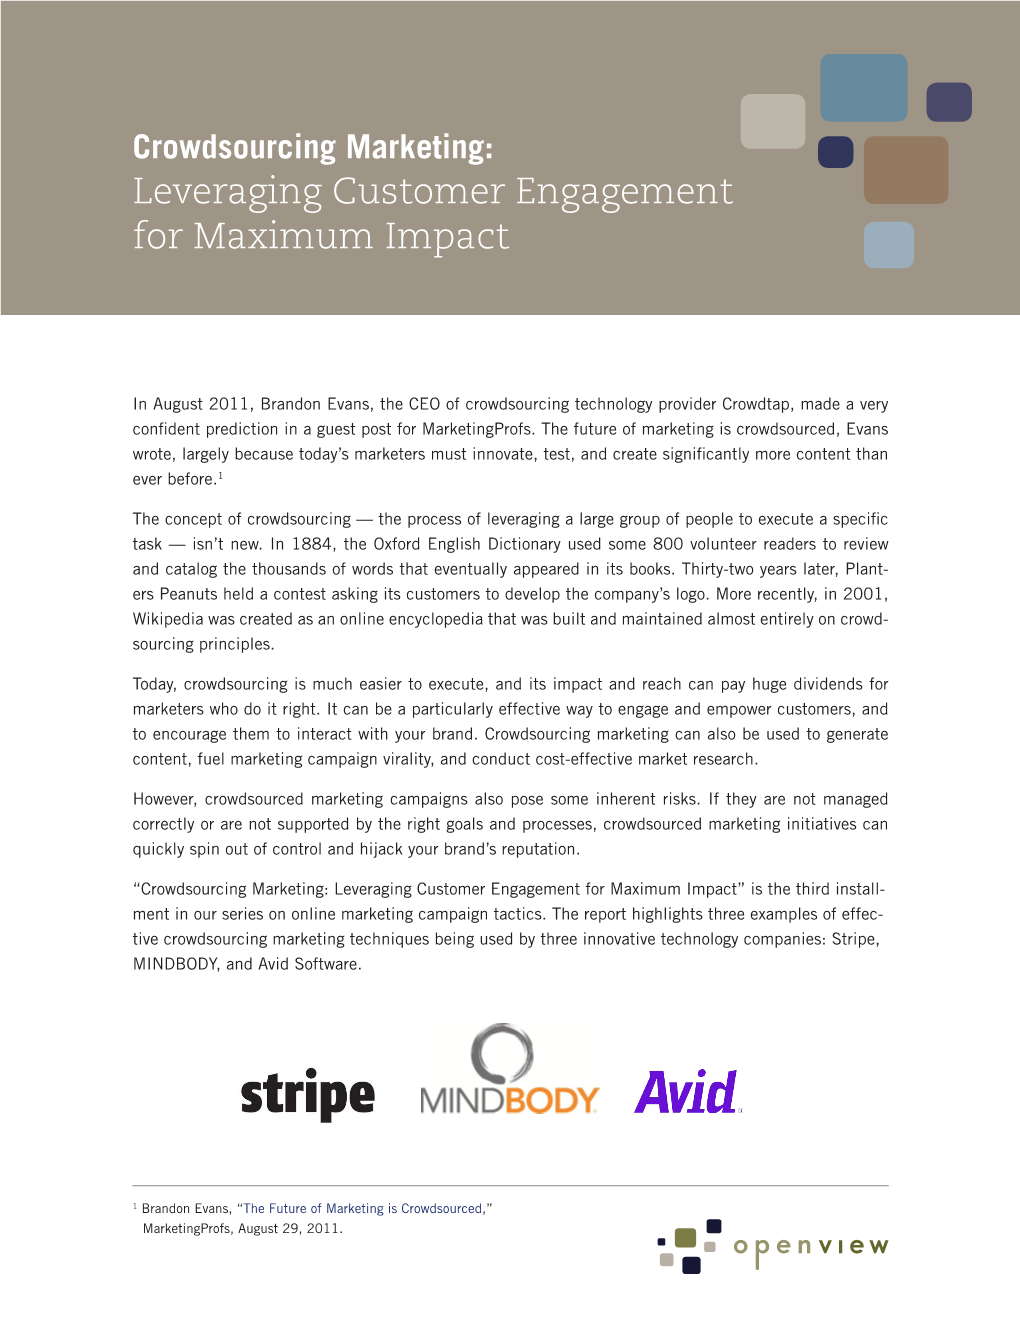 Leveraging Customer Engagement for Maximum Impact